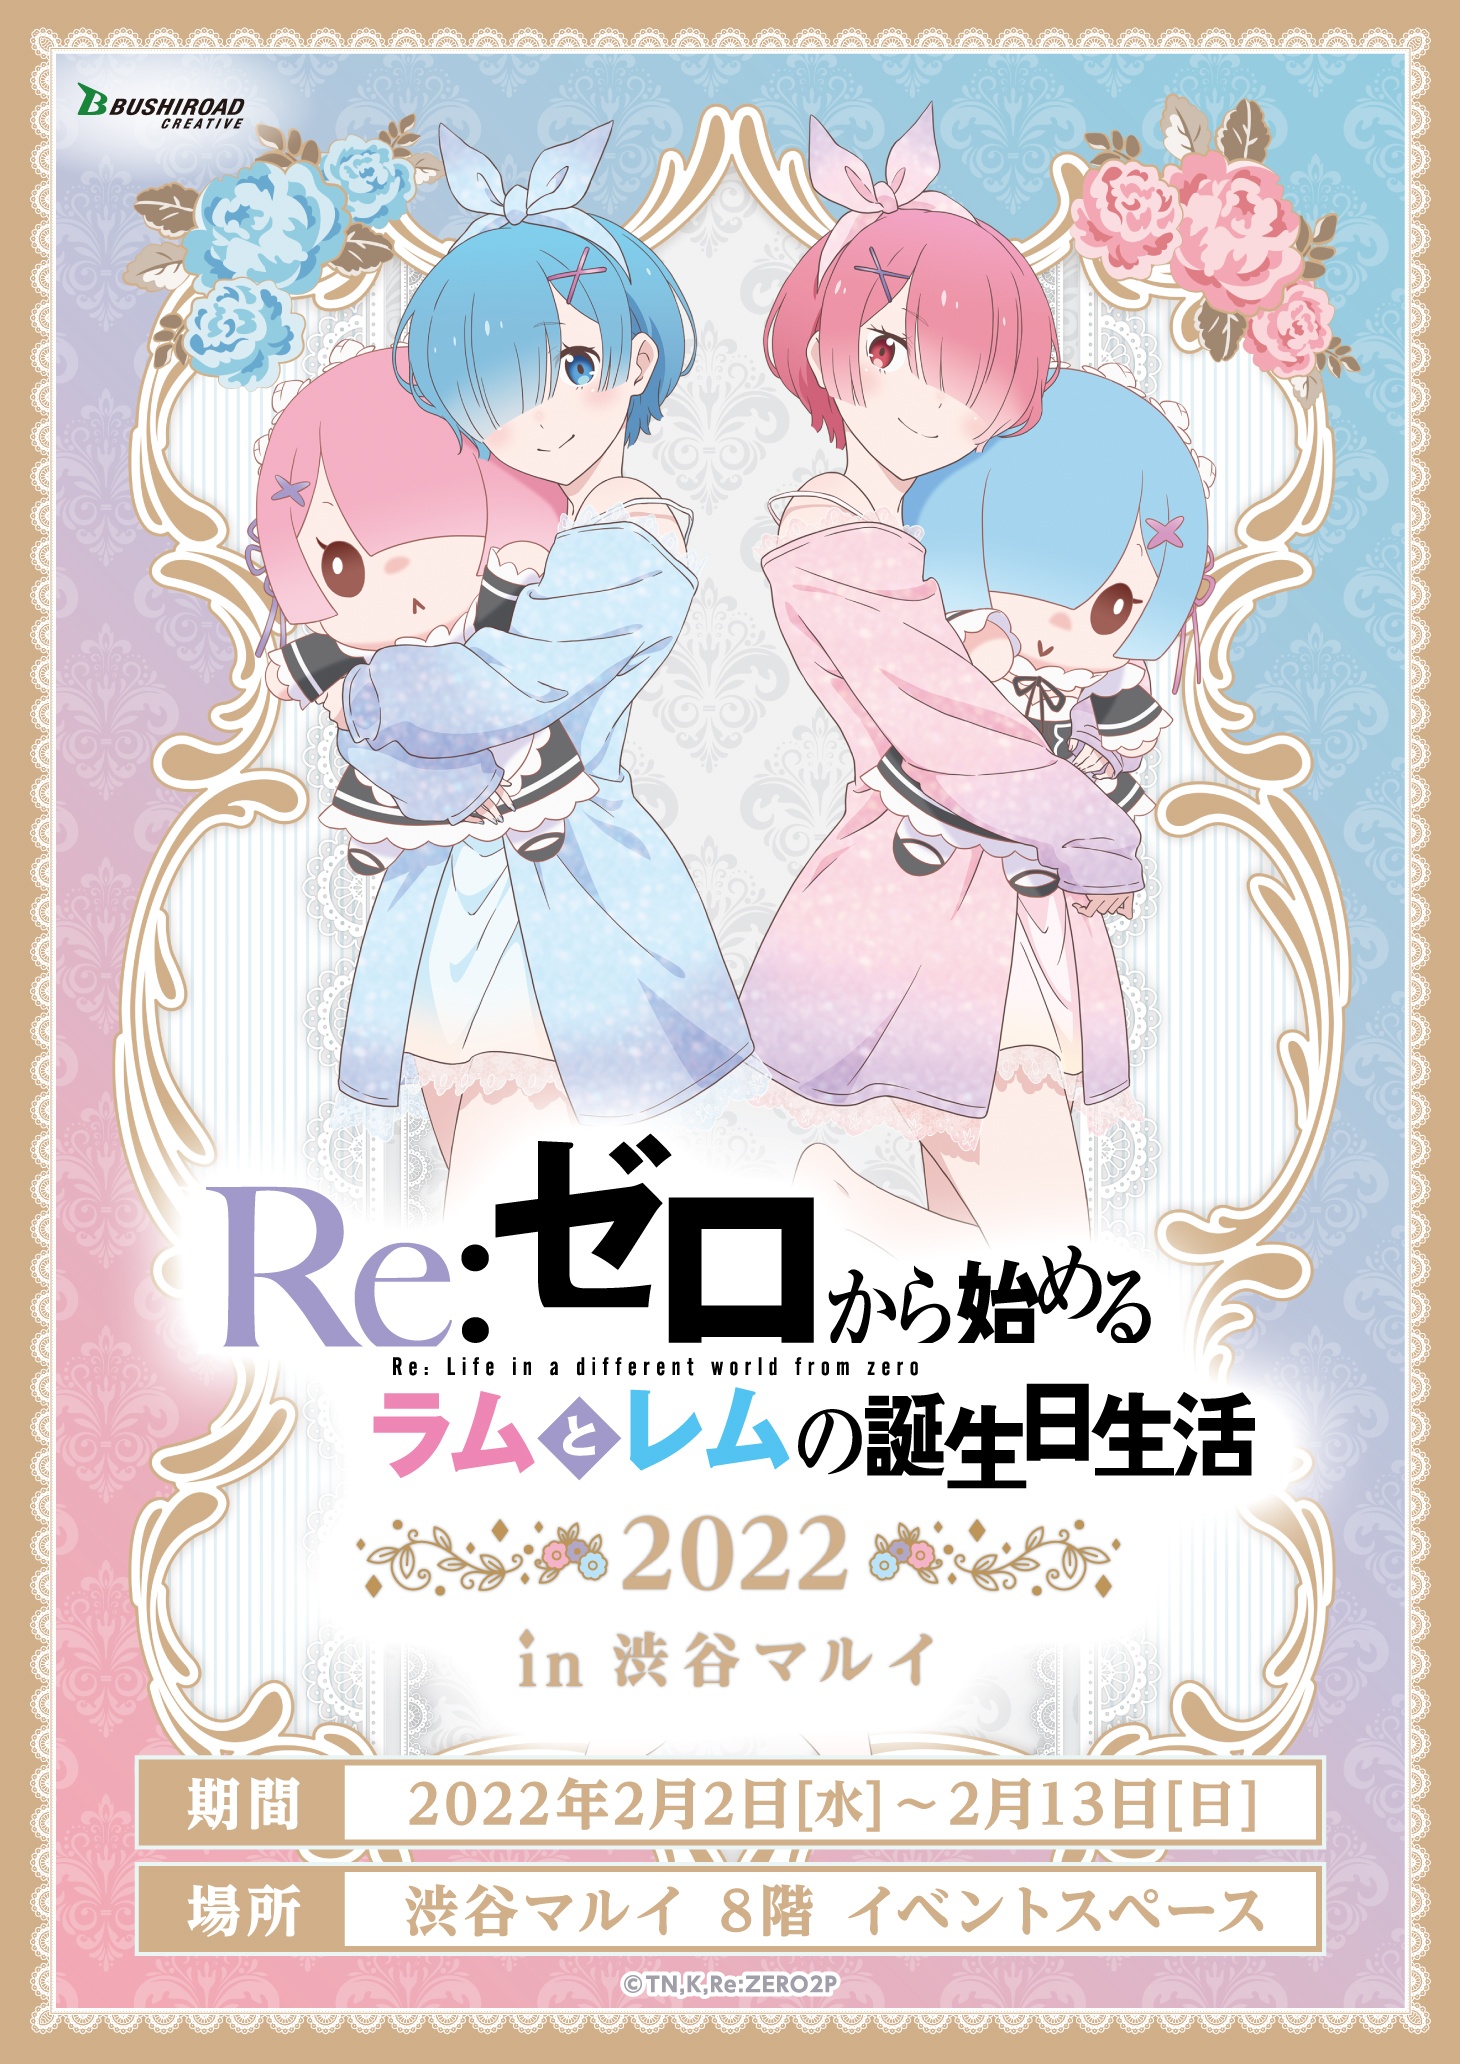 Re:Zero: Ram y Rem protagonizan adorables ilustraciones por sus próximos cumpleaños